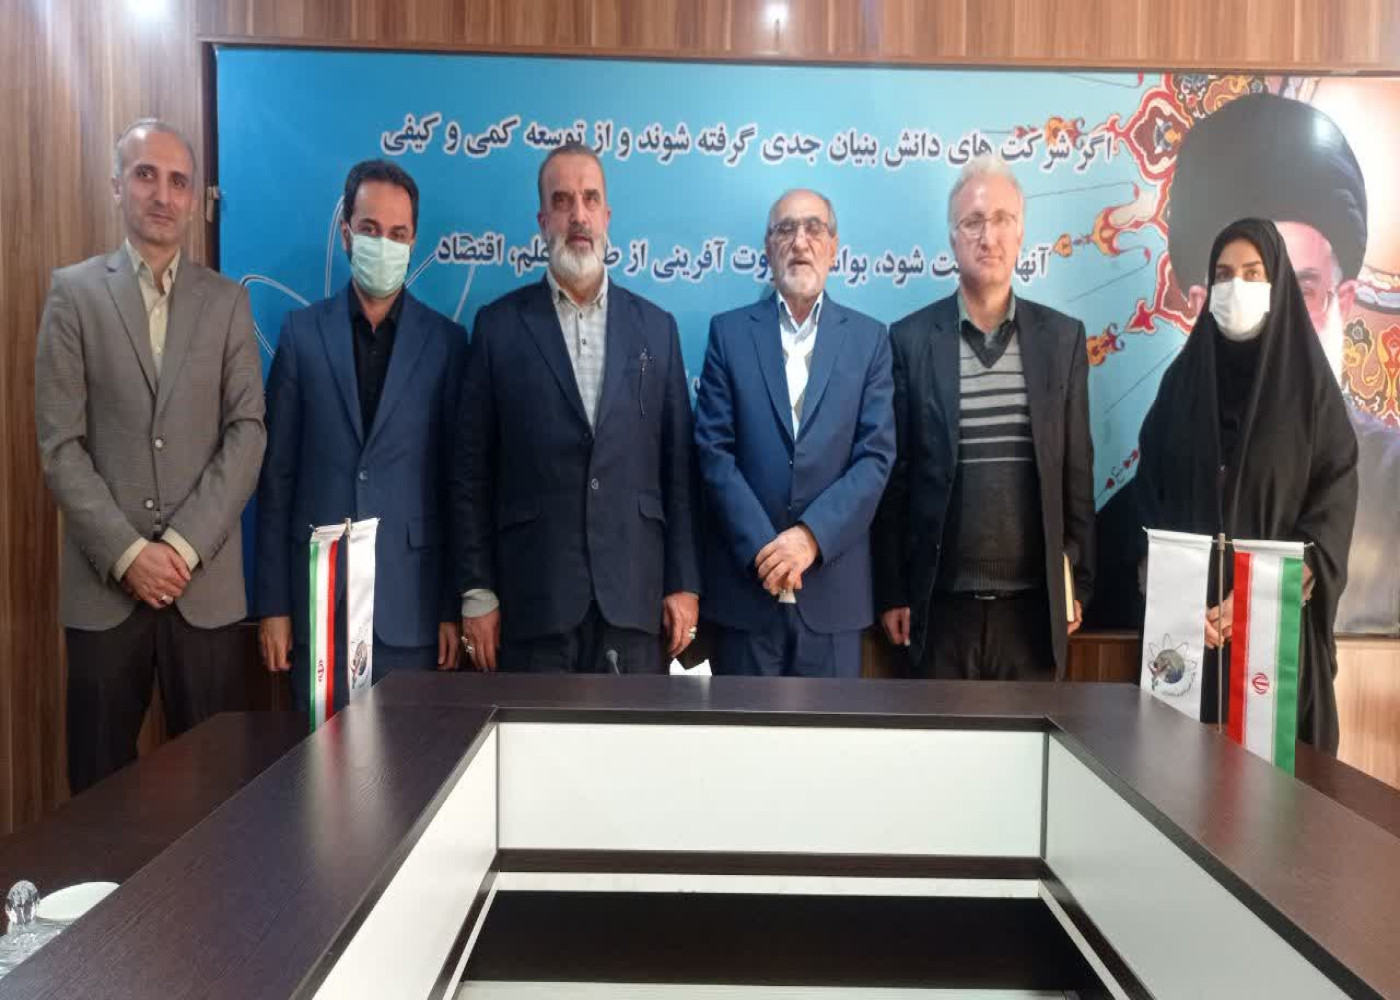 انعقاد قرارداد «پایدار سازی مشاغل» میان جهاد دانشگاهی مازندران و پارک علم و فناوری استان